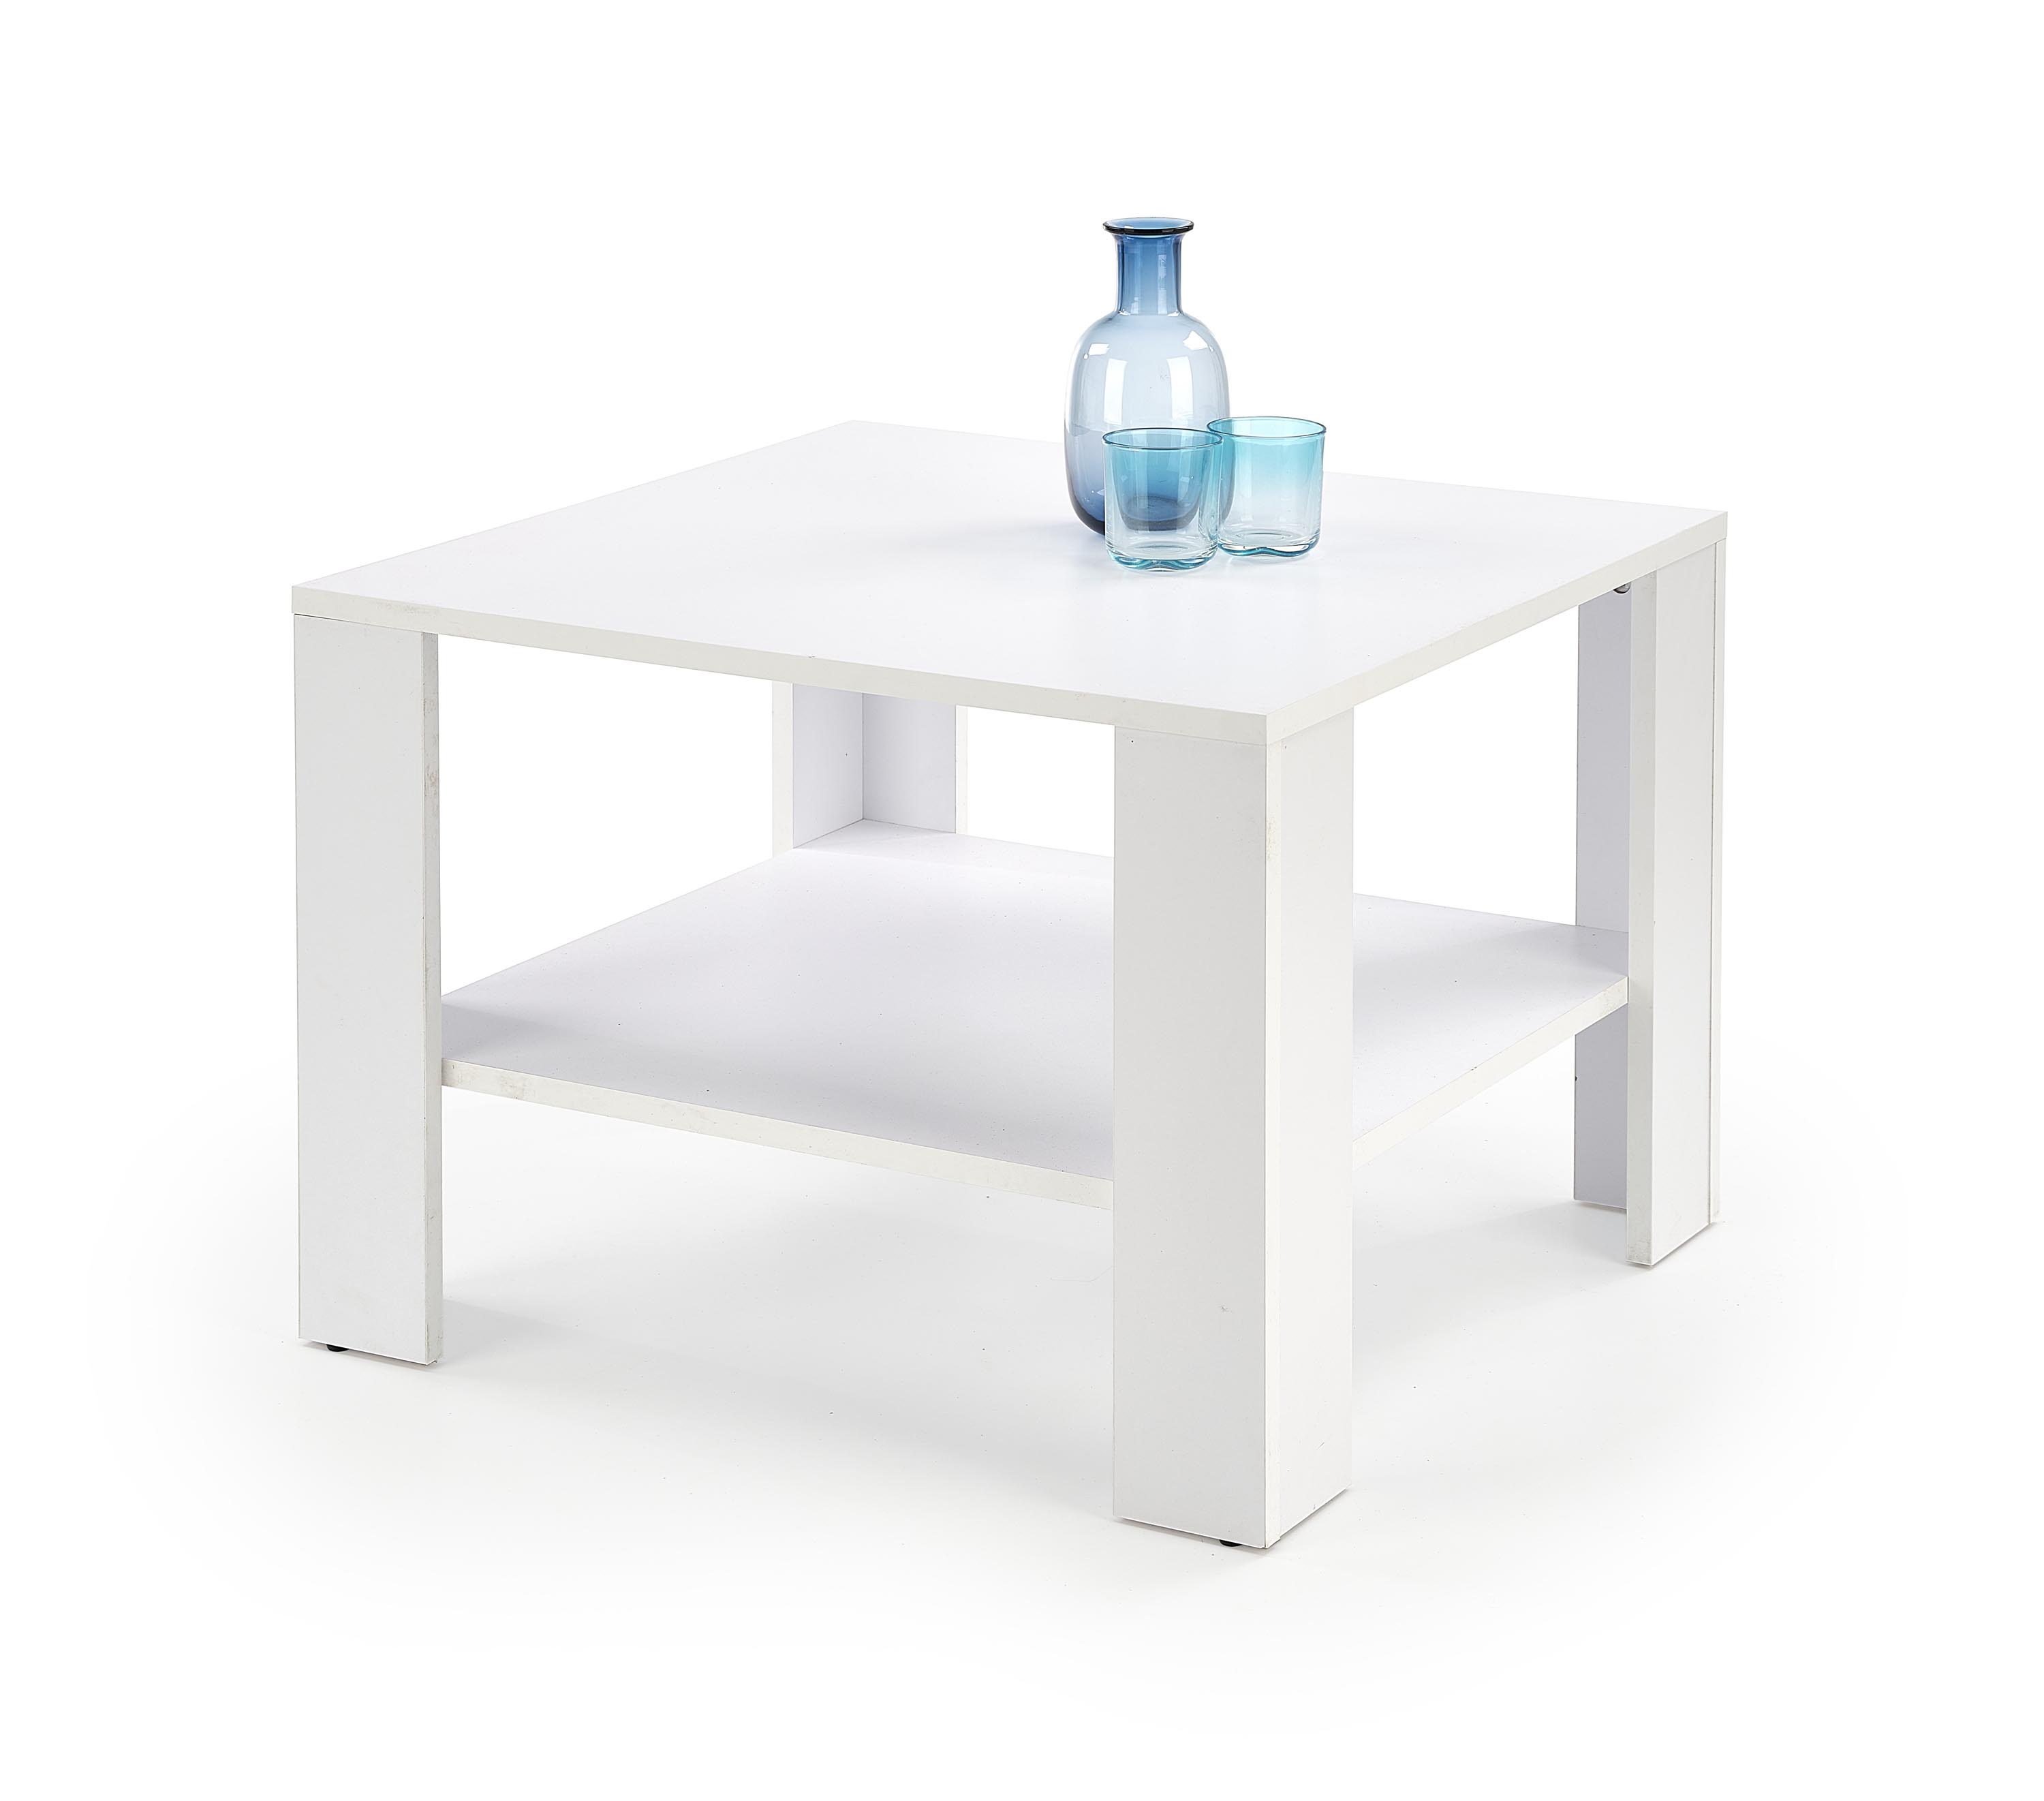 KWADRO Čtverec Konferenční stolek Barva Bílá kwadro Čtverec Konferenční stolek Barva Bílá